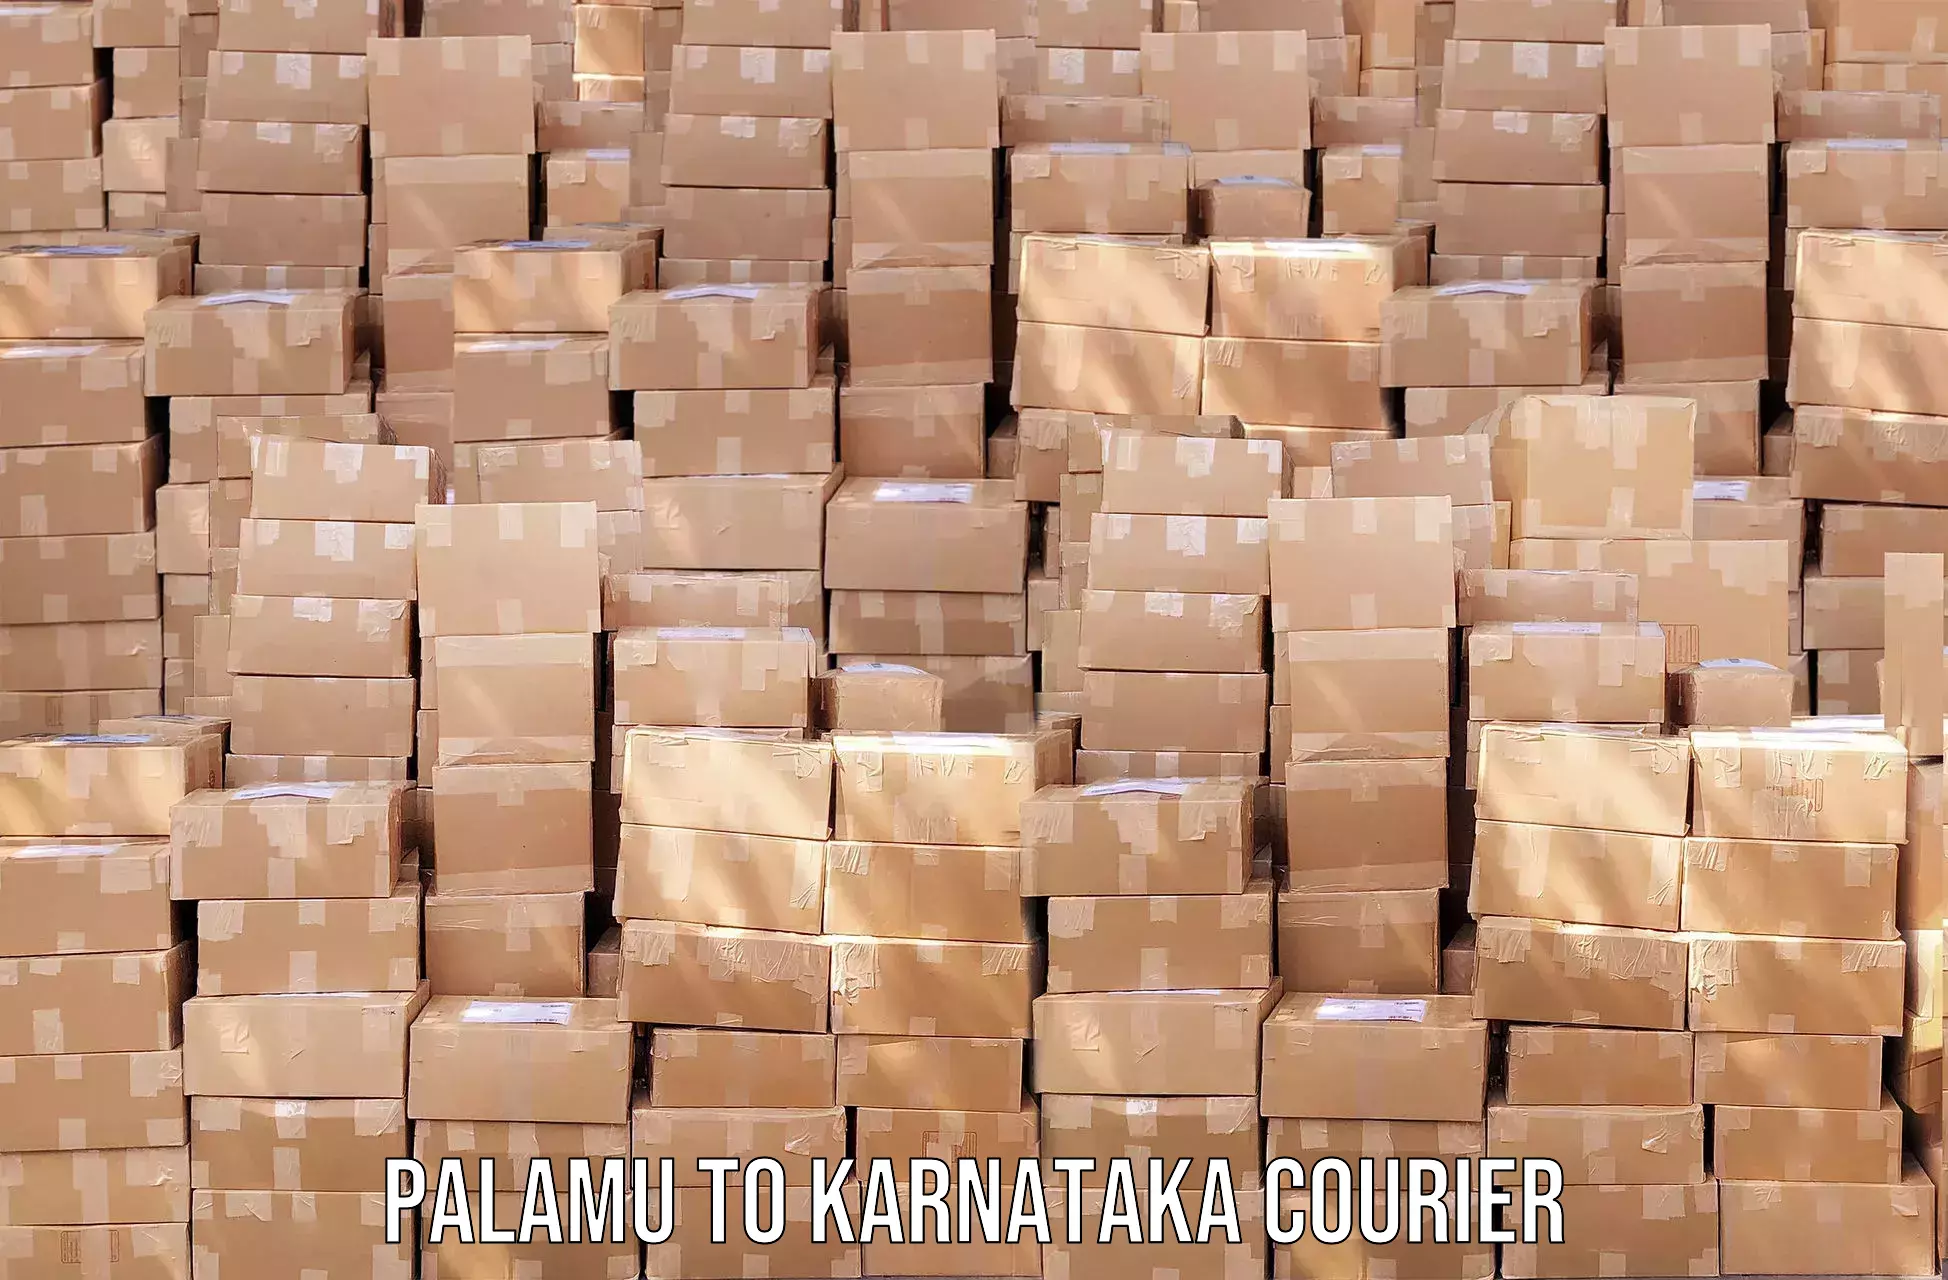 High-speed parcel service in Palamu to Karnataka